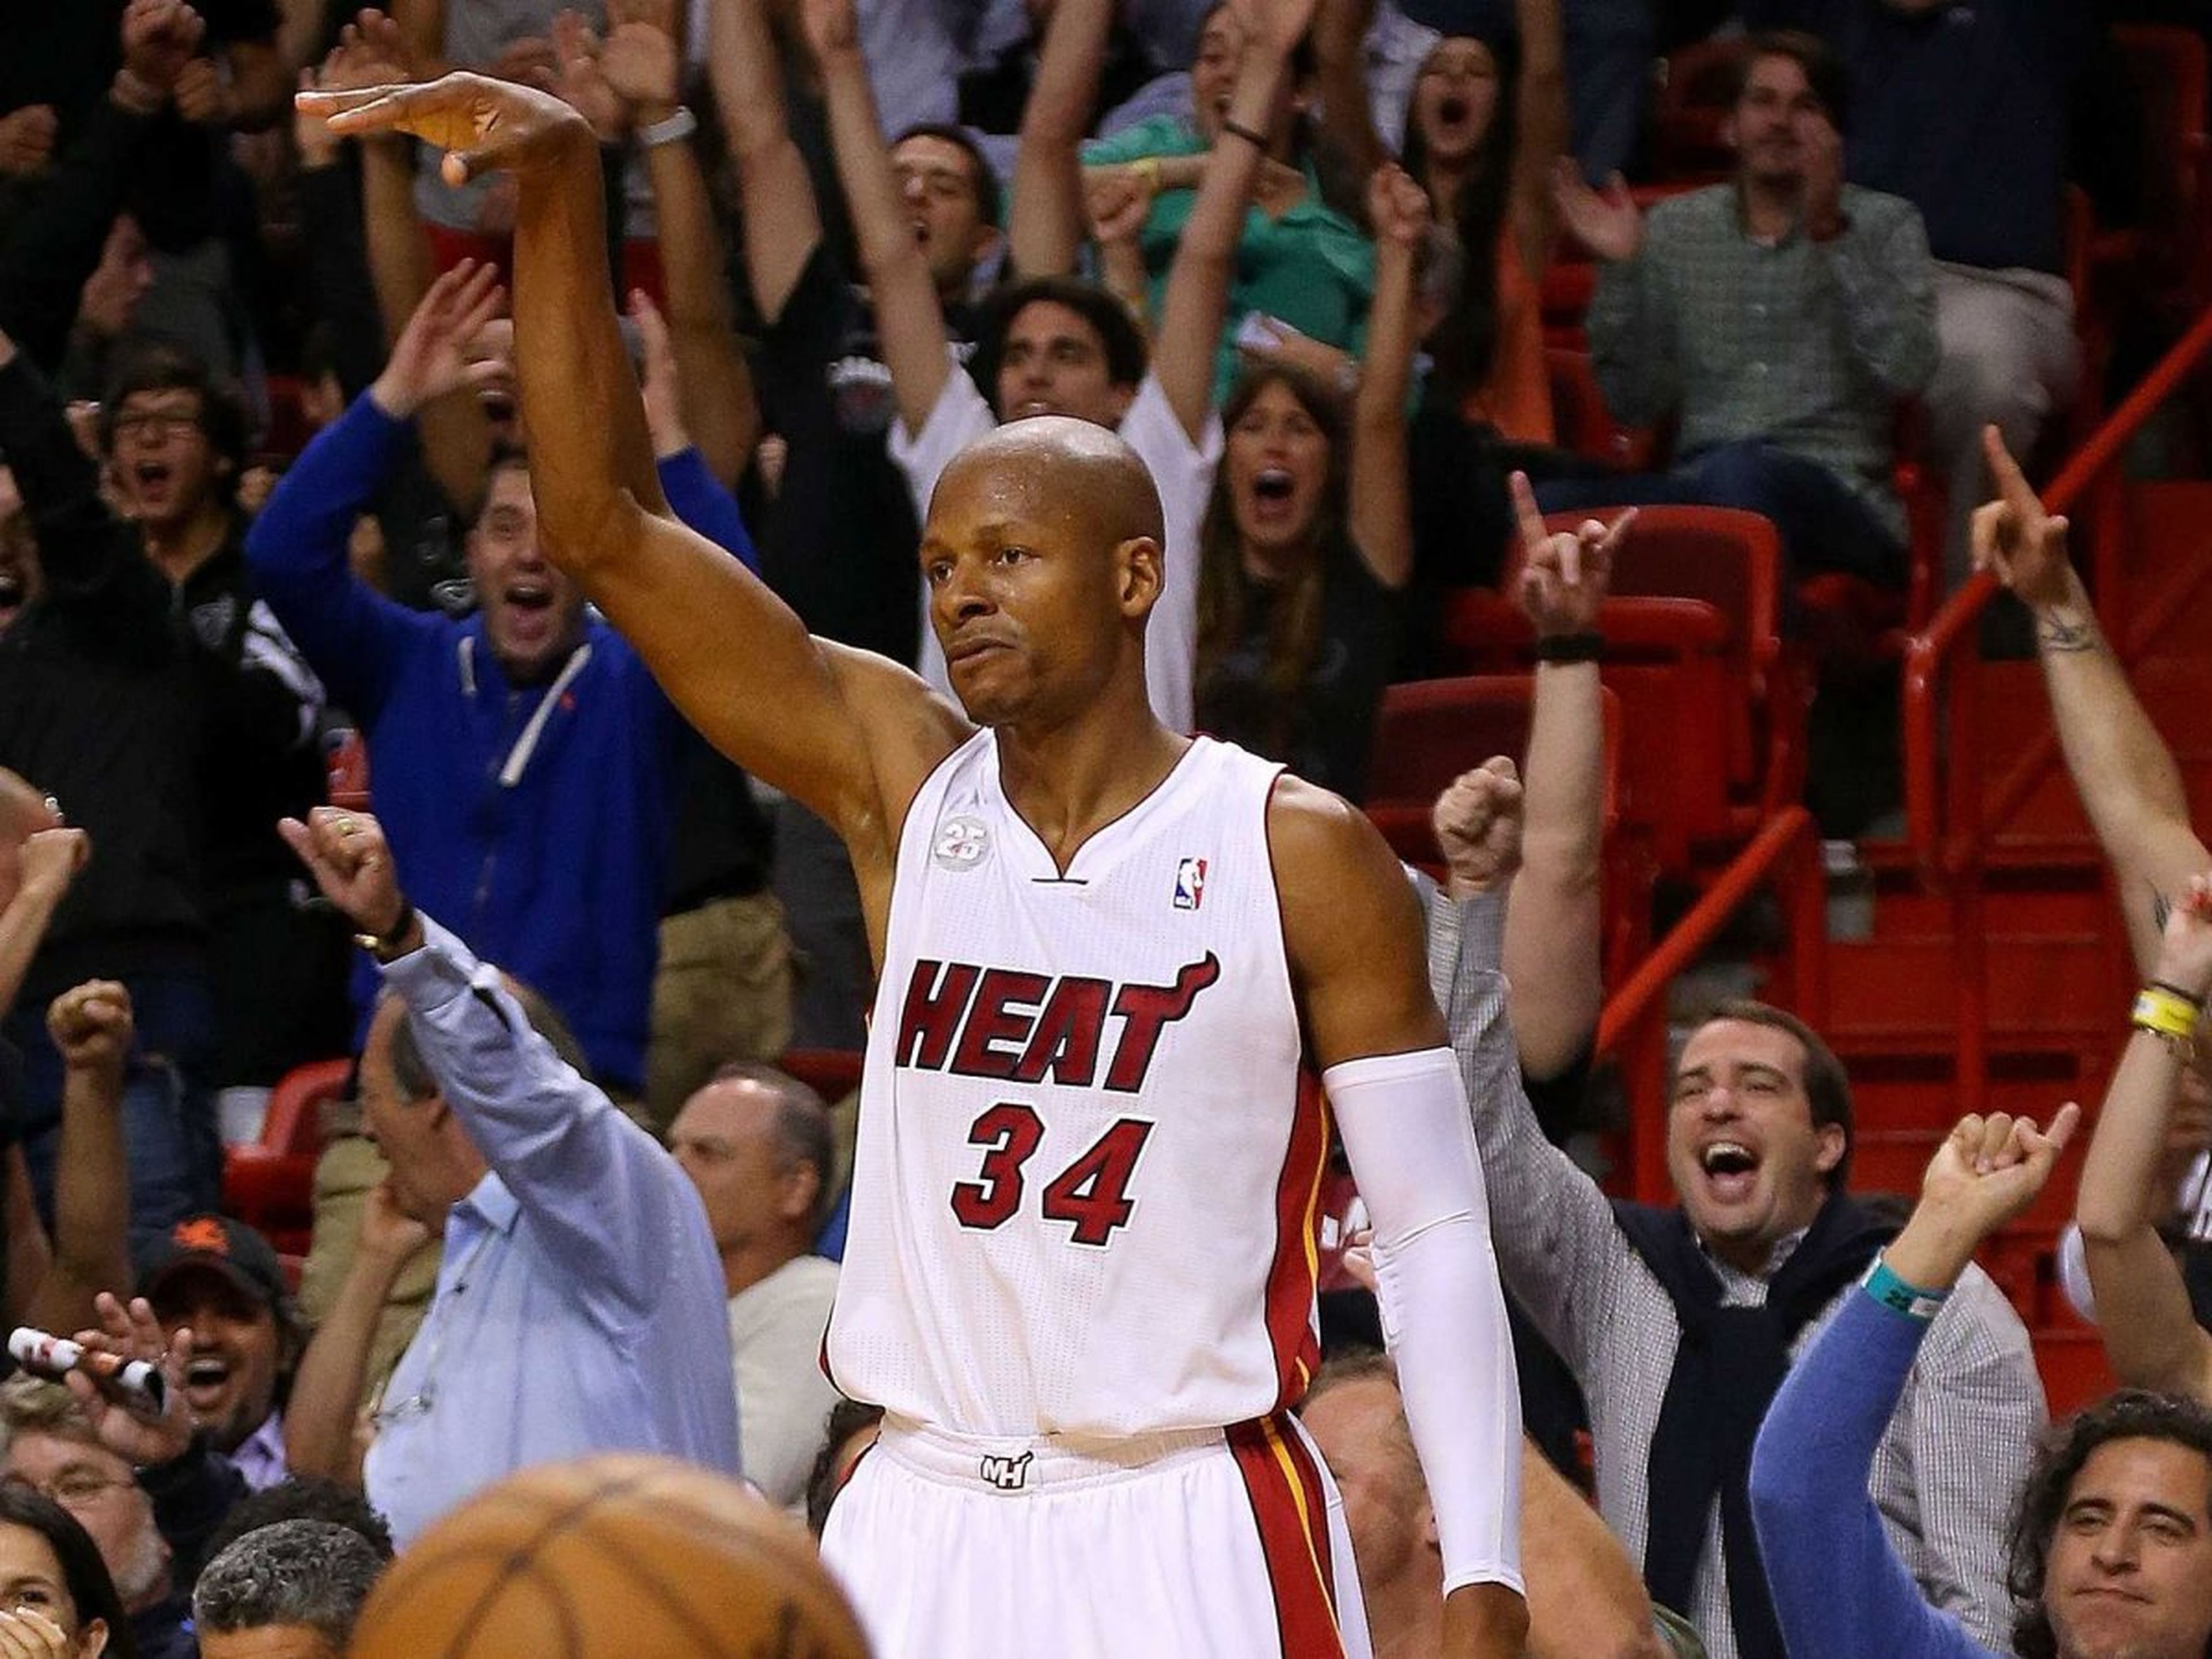 El jugador de baloncesto de la NBA Ray Allen celebra un punto en un partido de Miami Heat.